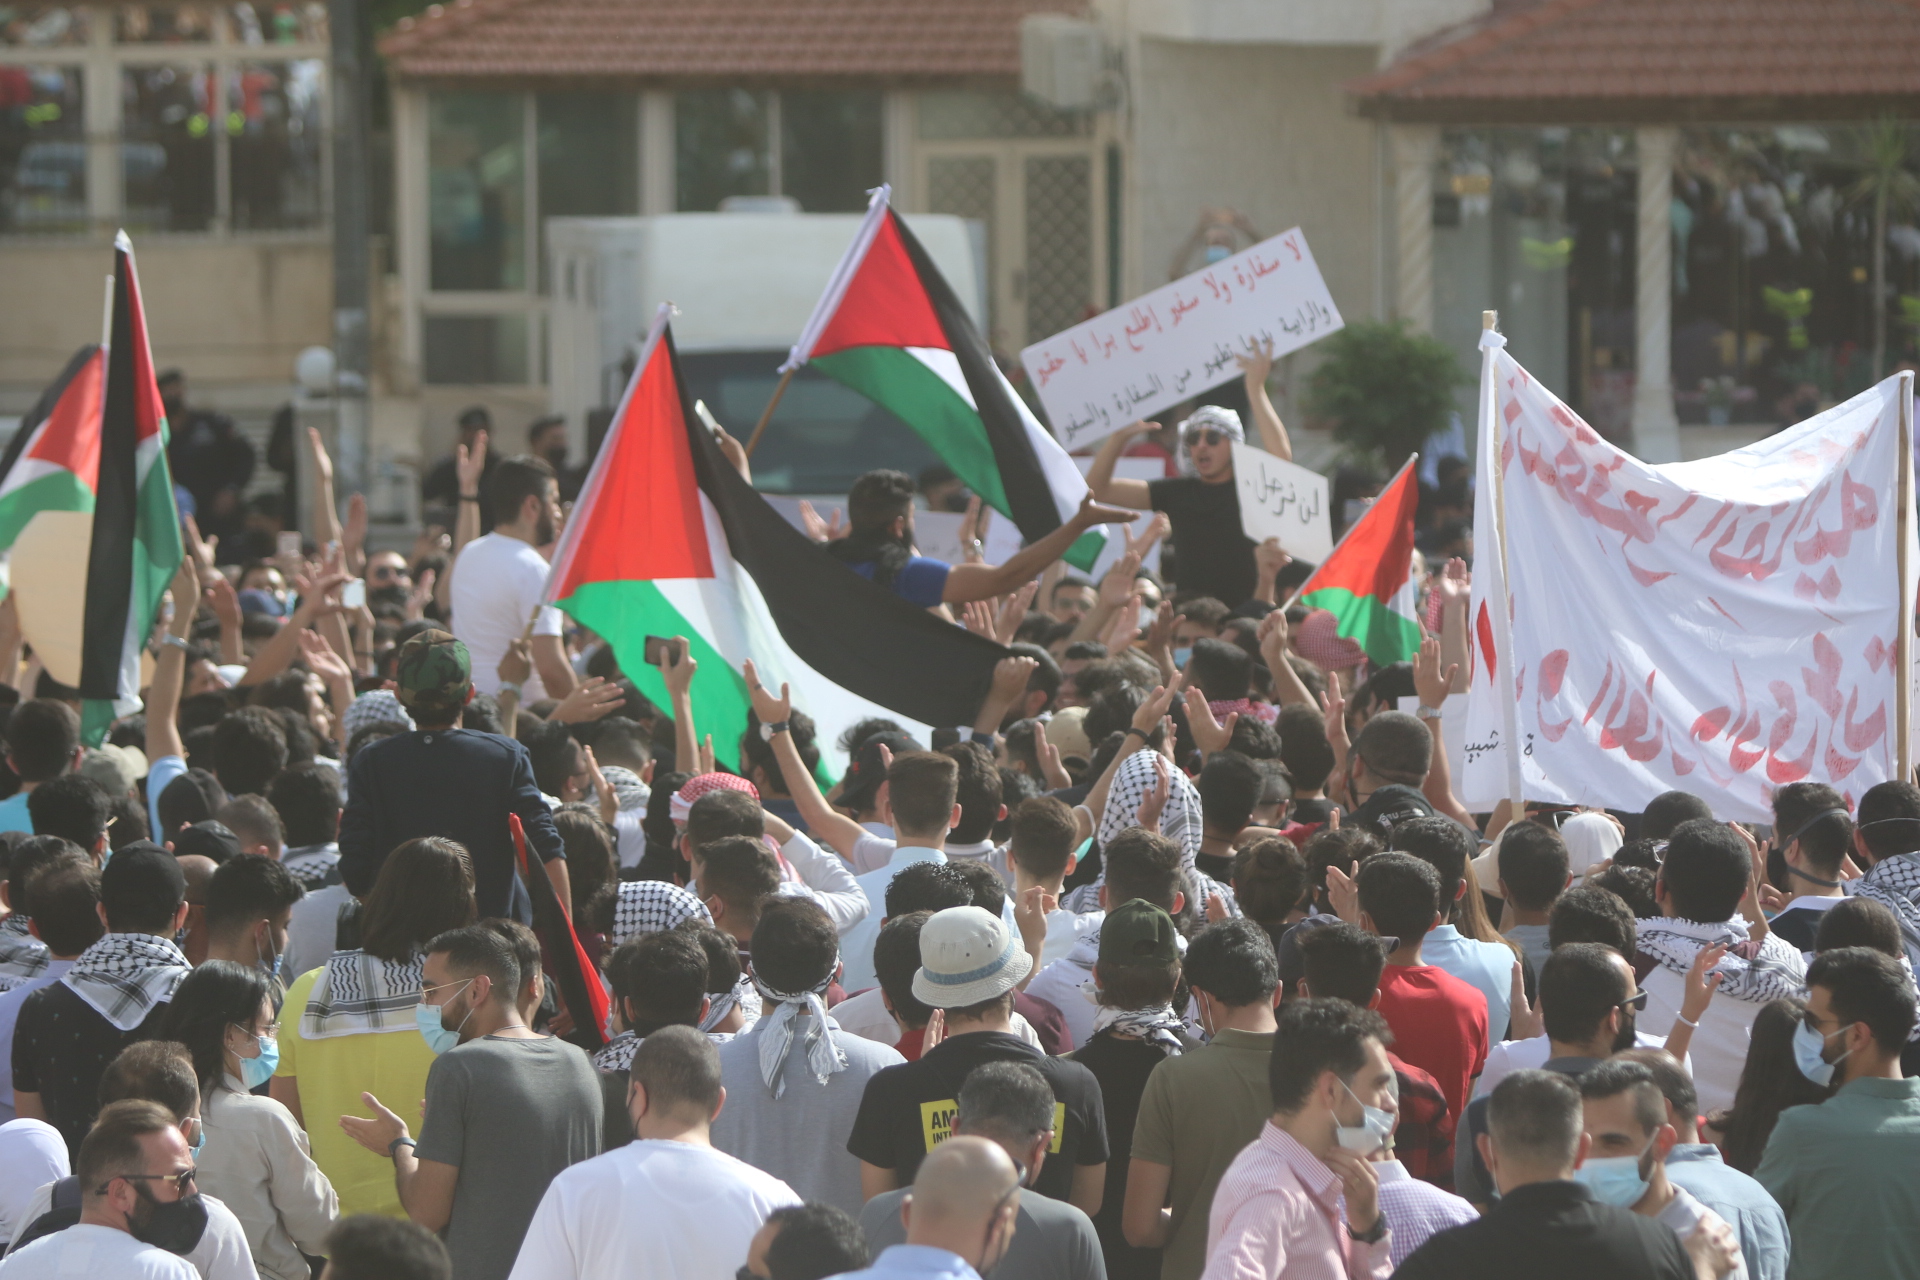 وقفة احتجاجية أمام مسجد الكالوتي في الرابية في عمّان تنديدا بالاعتداءات الإسرائيلية على القدس. (صلاح ملكاوي/ المملكة)